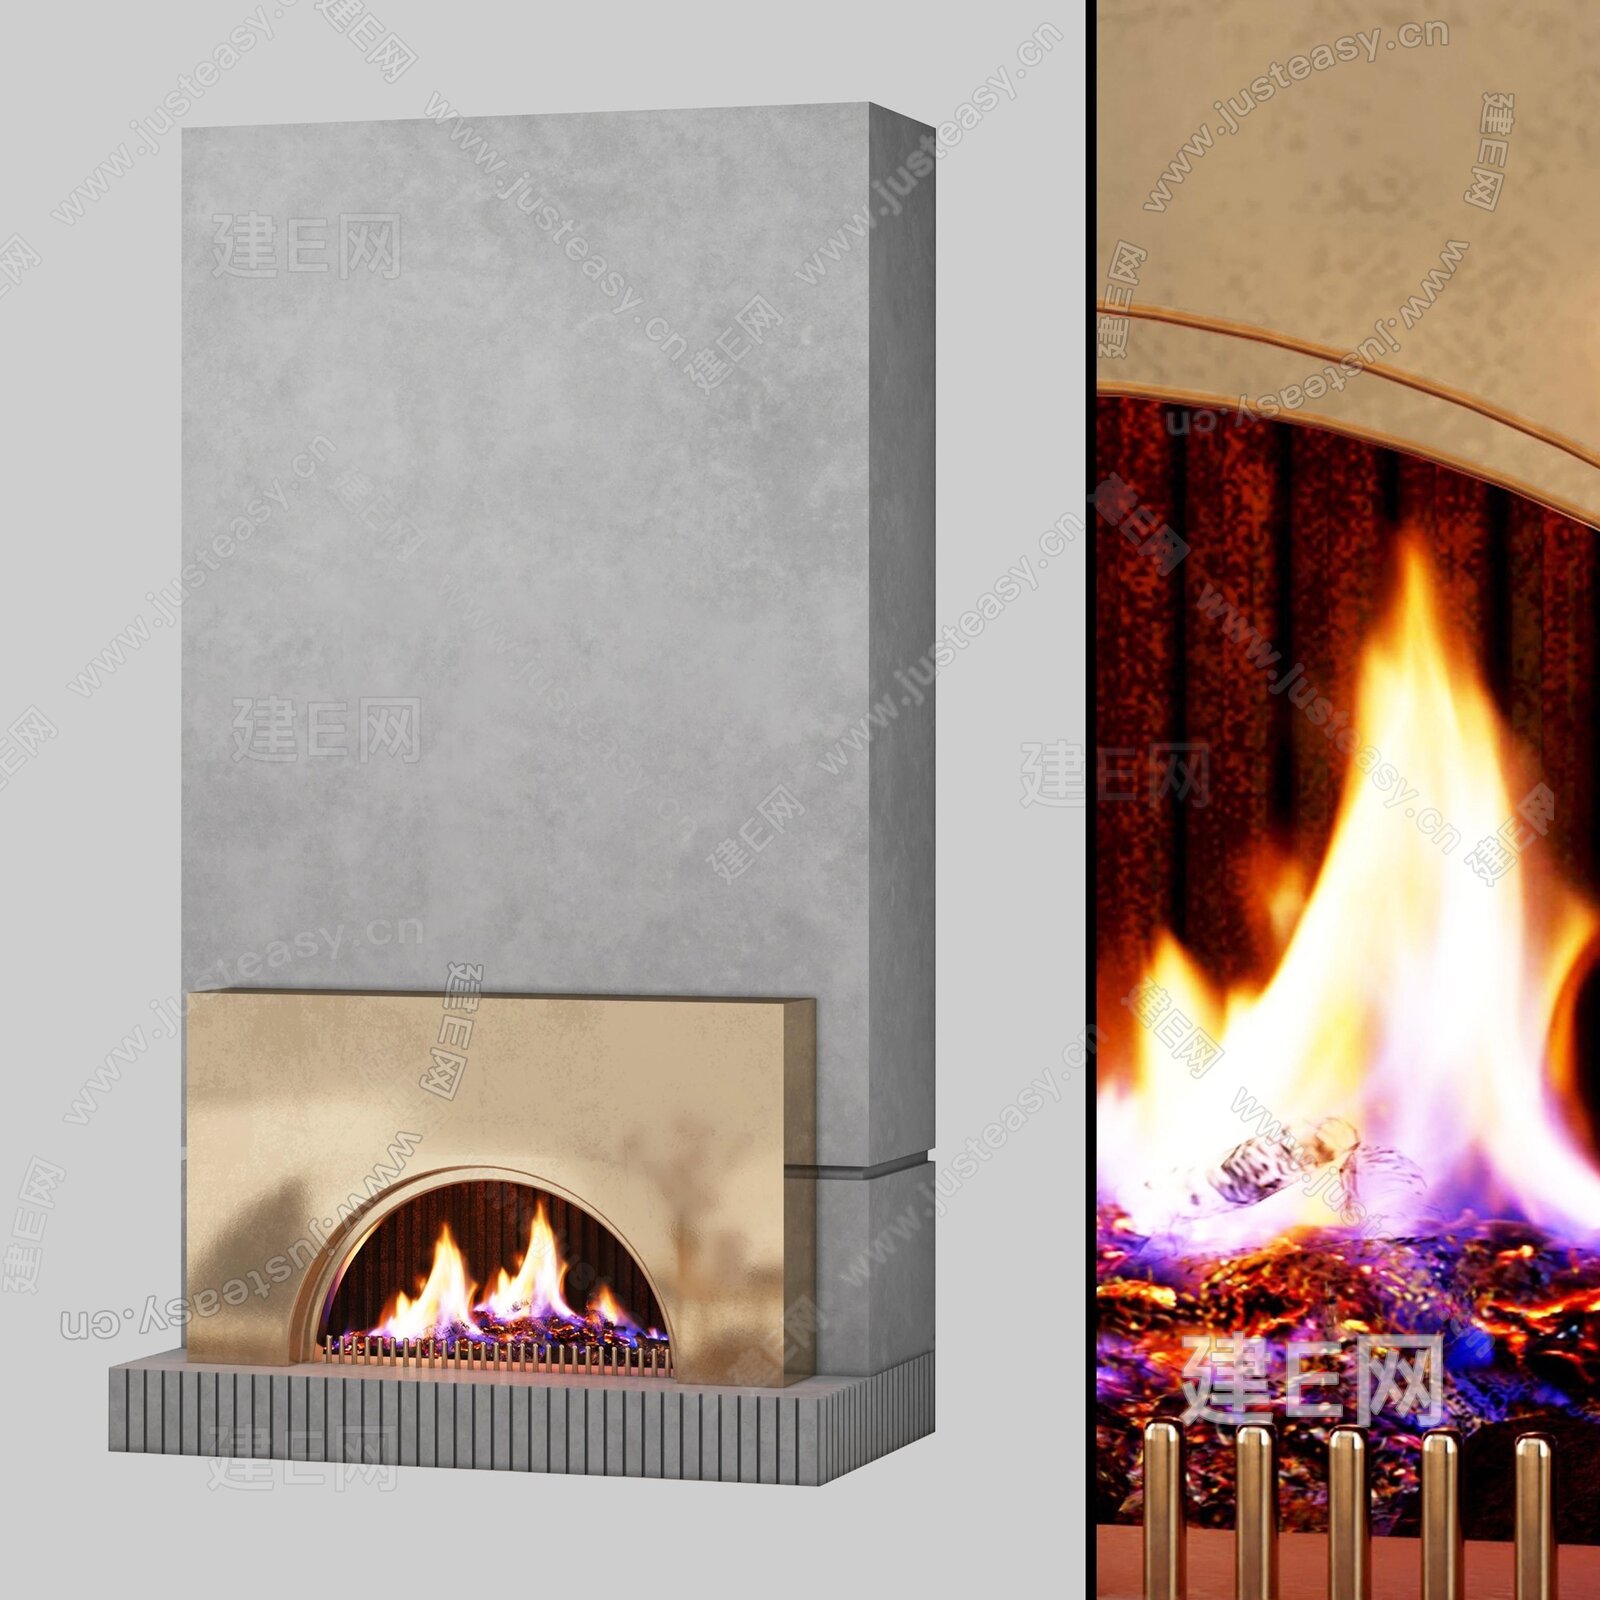 【德雷进口壁炉-最新案例】汇集欧洲顶级真火壁炉品牌,为您提供安全的火焰